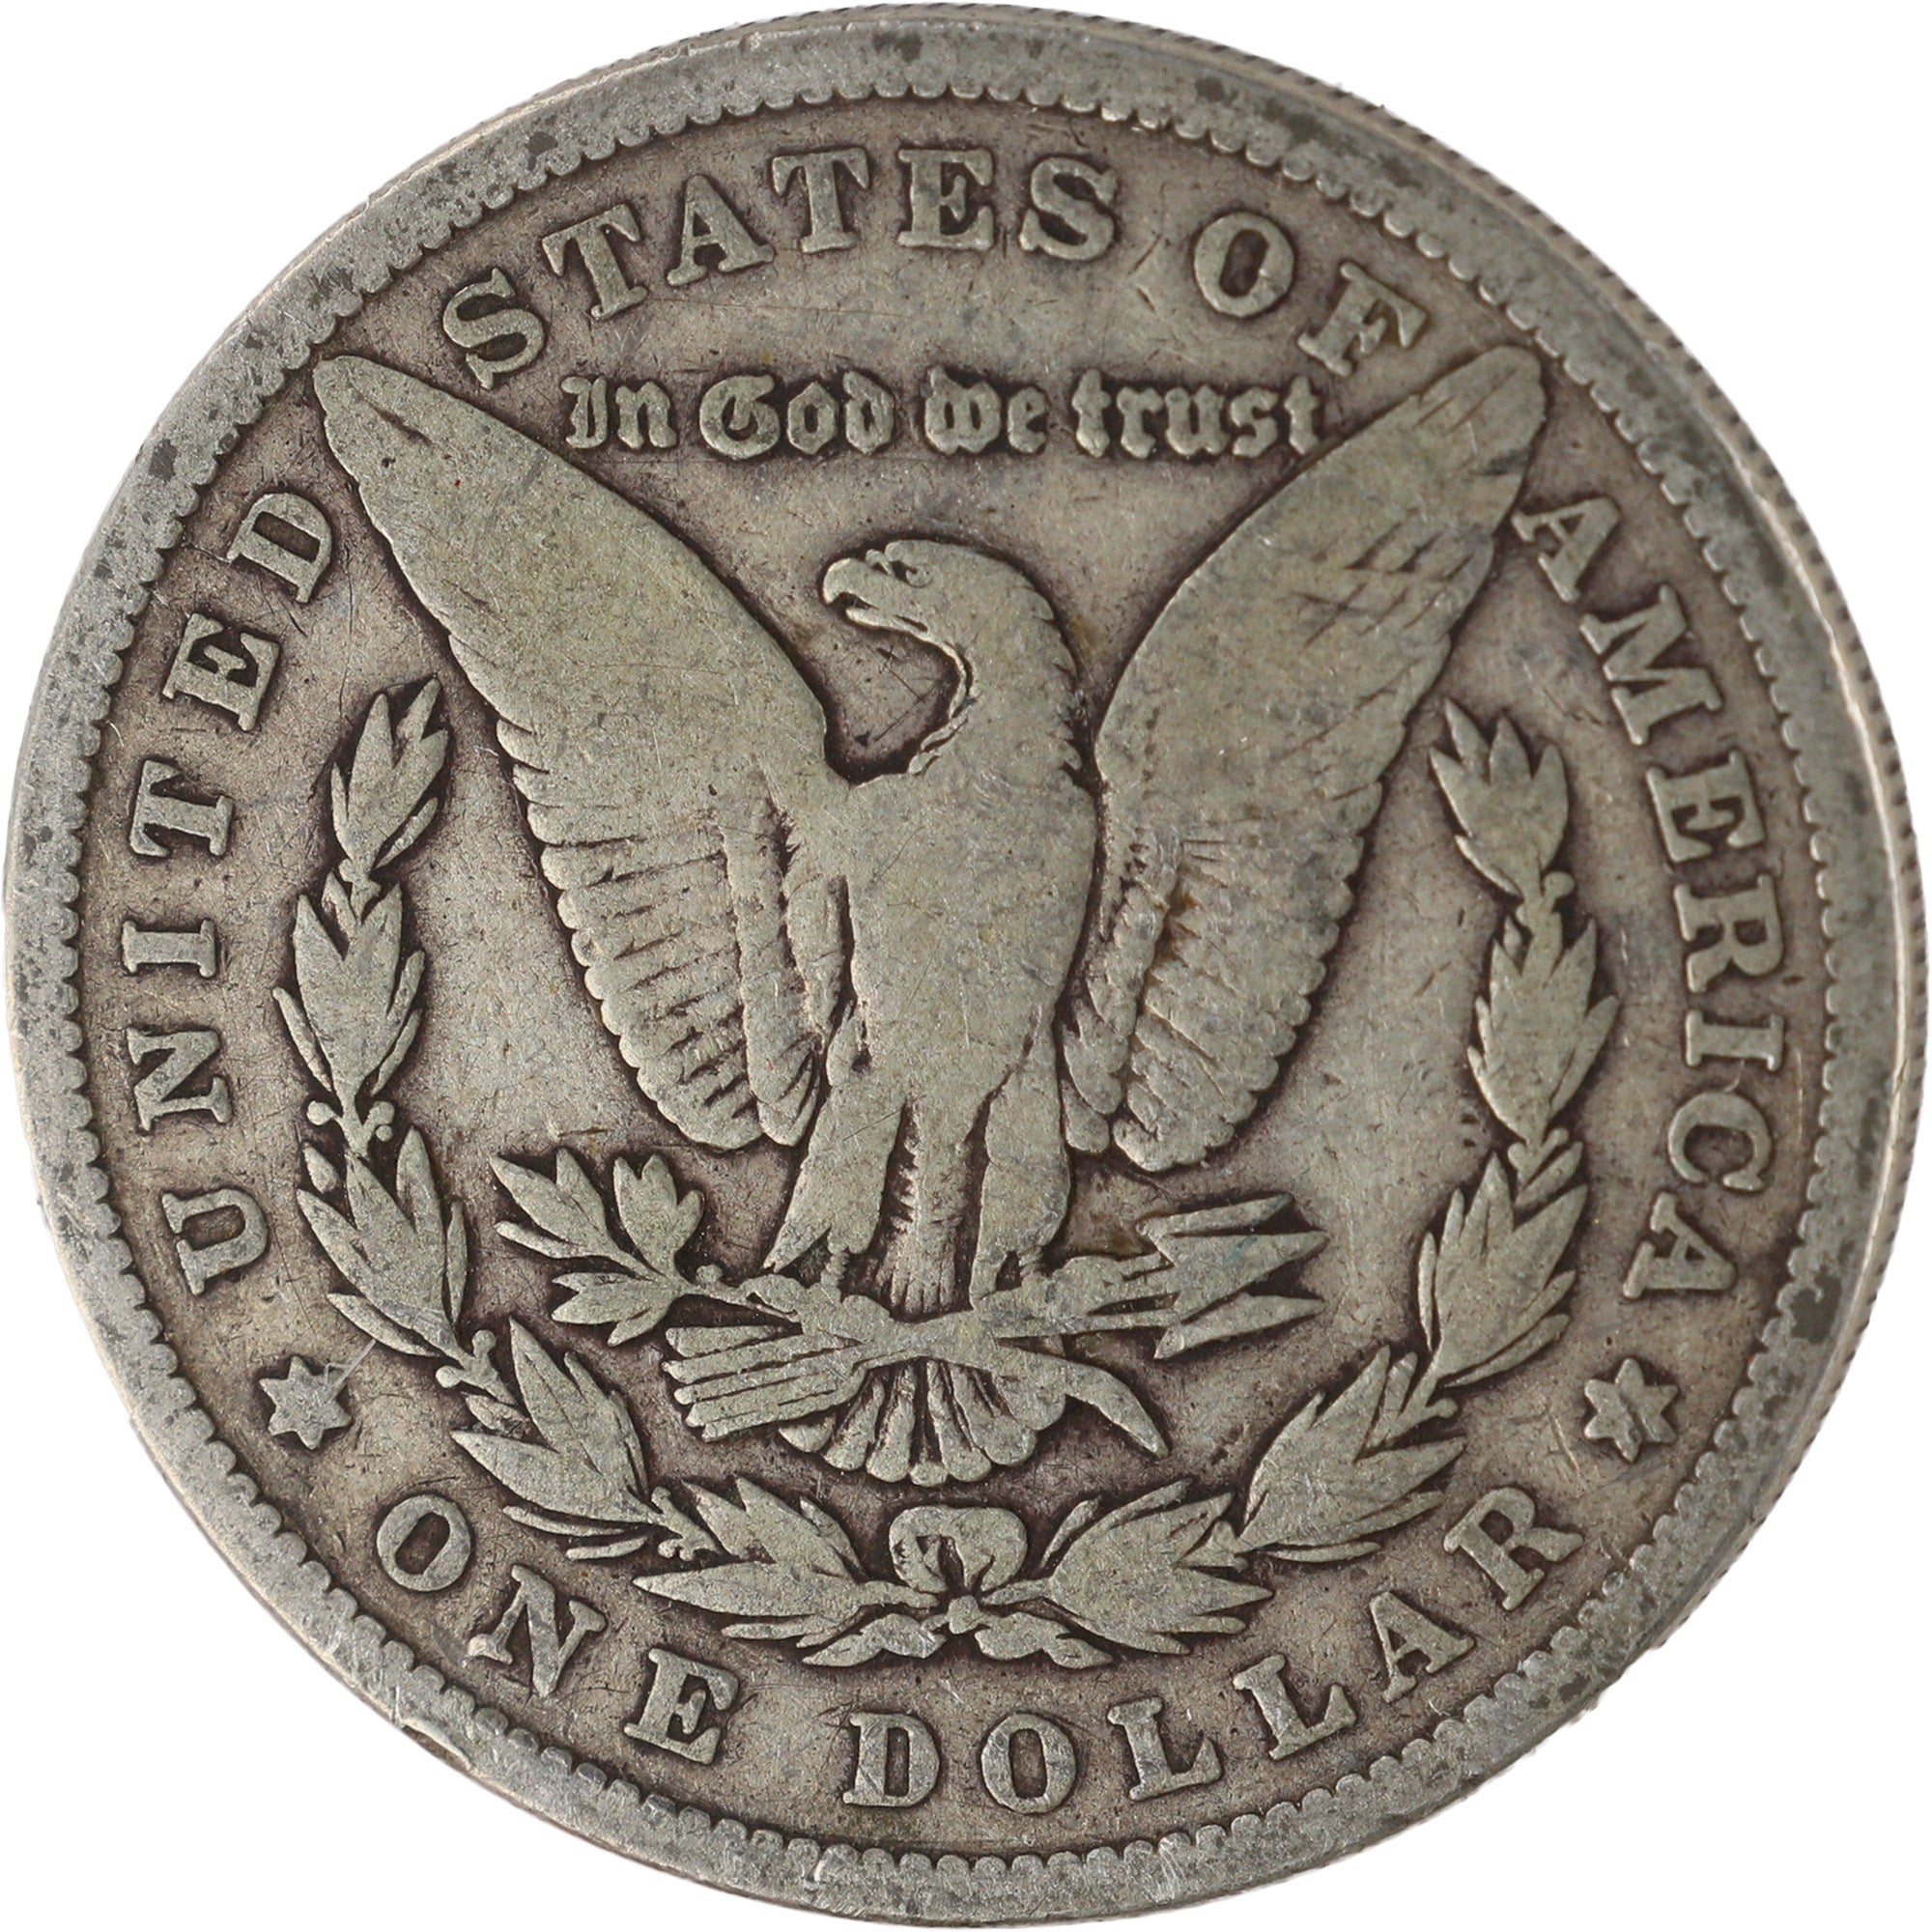 1878 7TF Rev 79 Morgan Dollar VG Very Good Silver $1 Coin SKU:I12002 - Morgan coin - Morgan silver dollar - Morgan silver dollar for sale - Profile Coins &amp; Collectibles